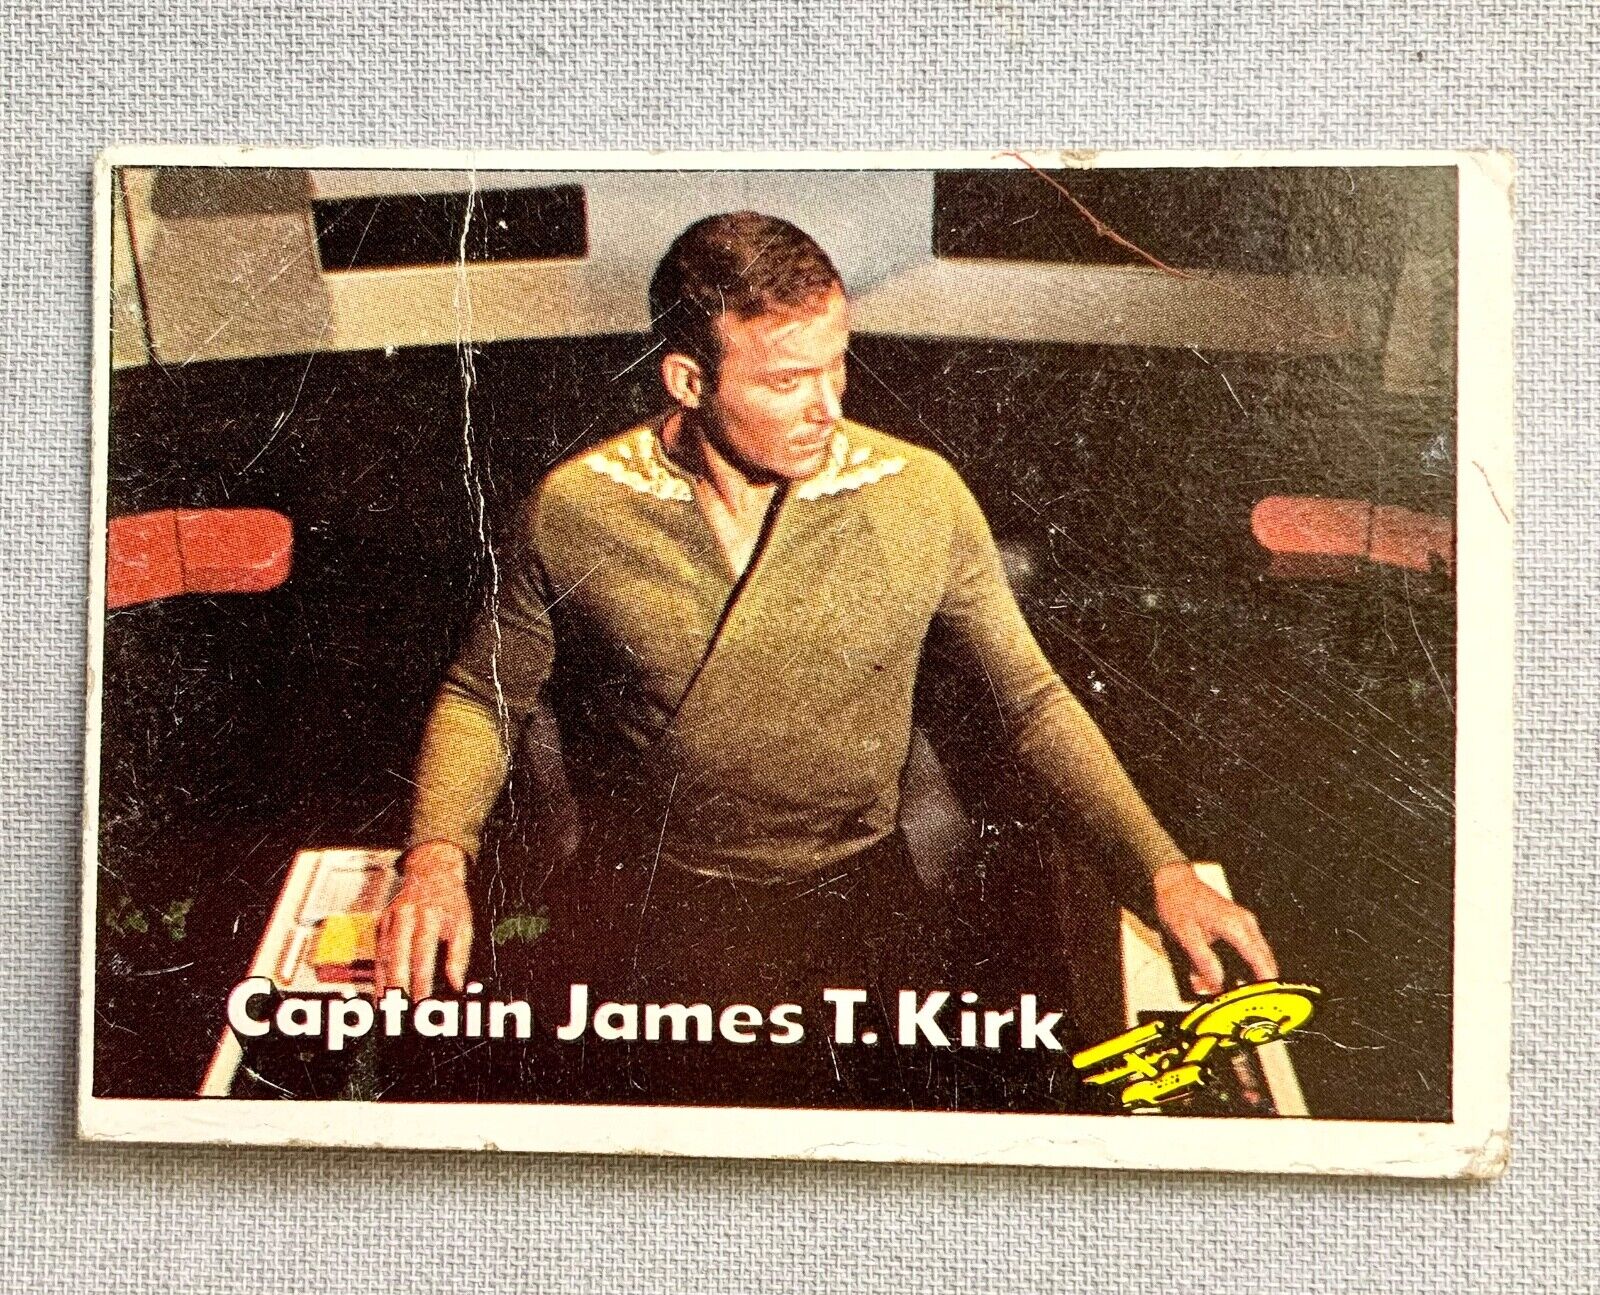 1976 TOPPS STAR TREK CAPTAIN JAMES T. KIRK #2 CARD